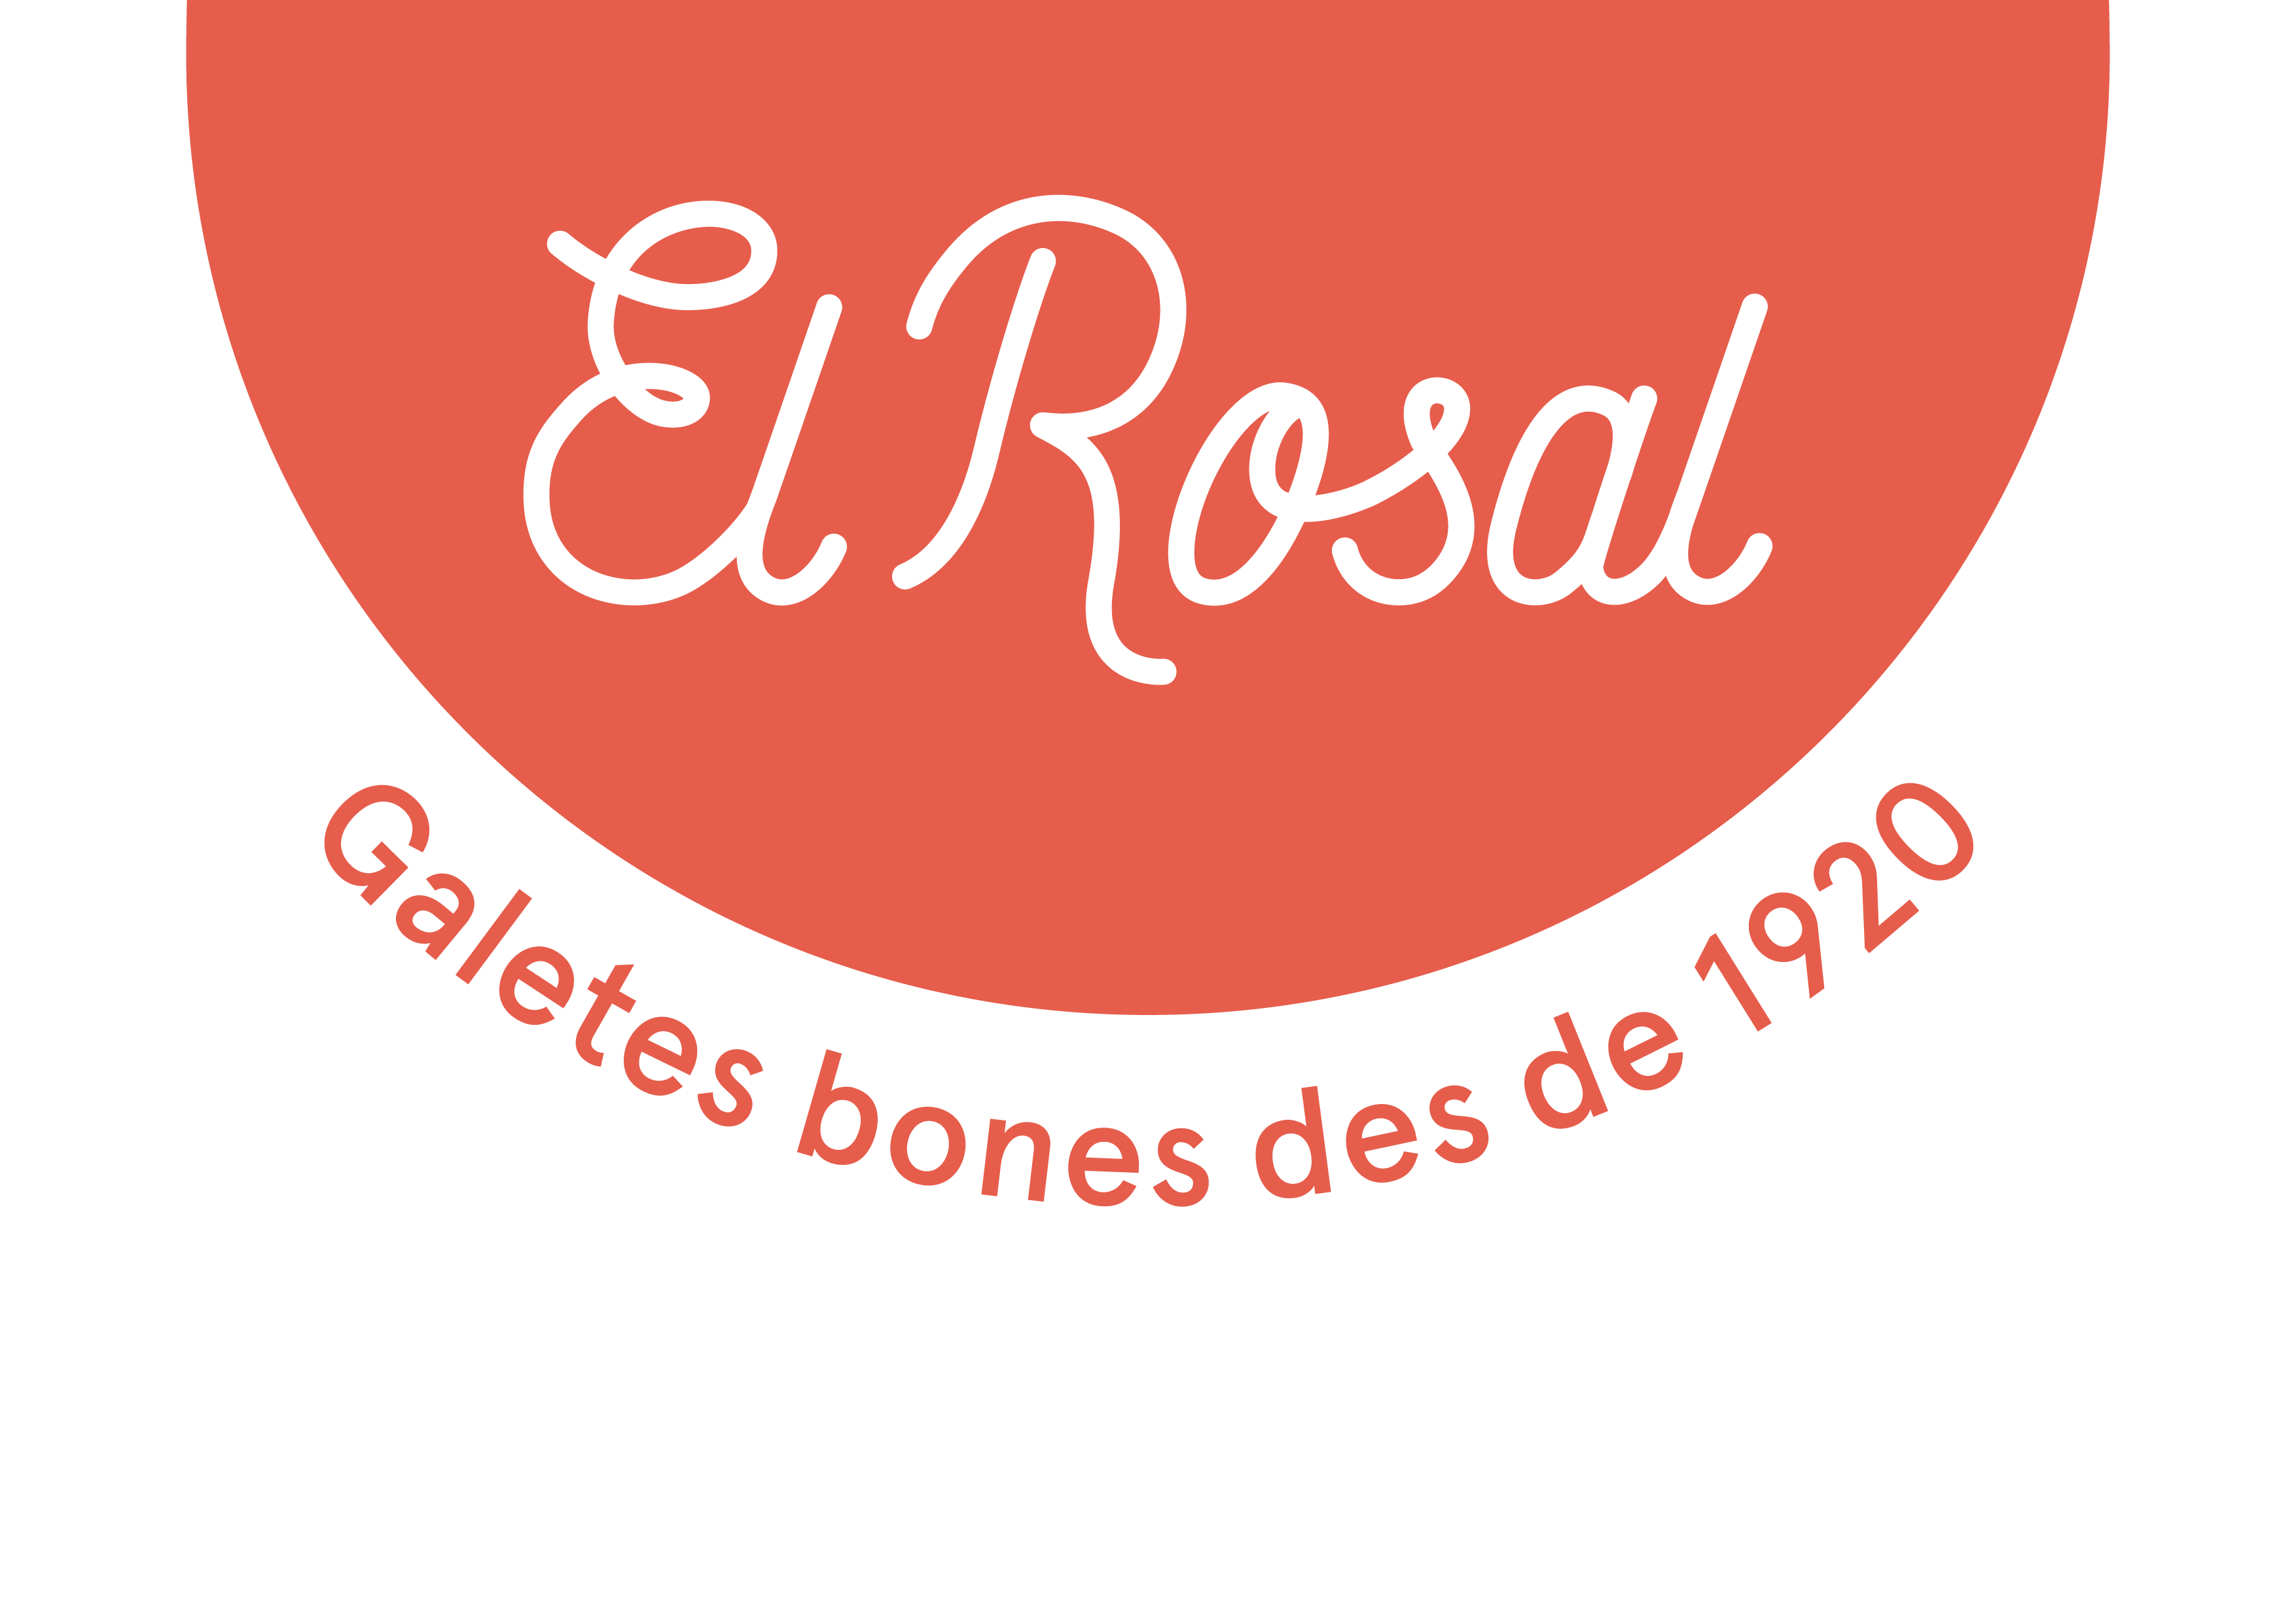 El Rosal - Galletas buenas desde 1920